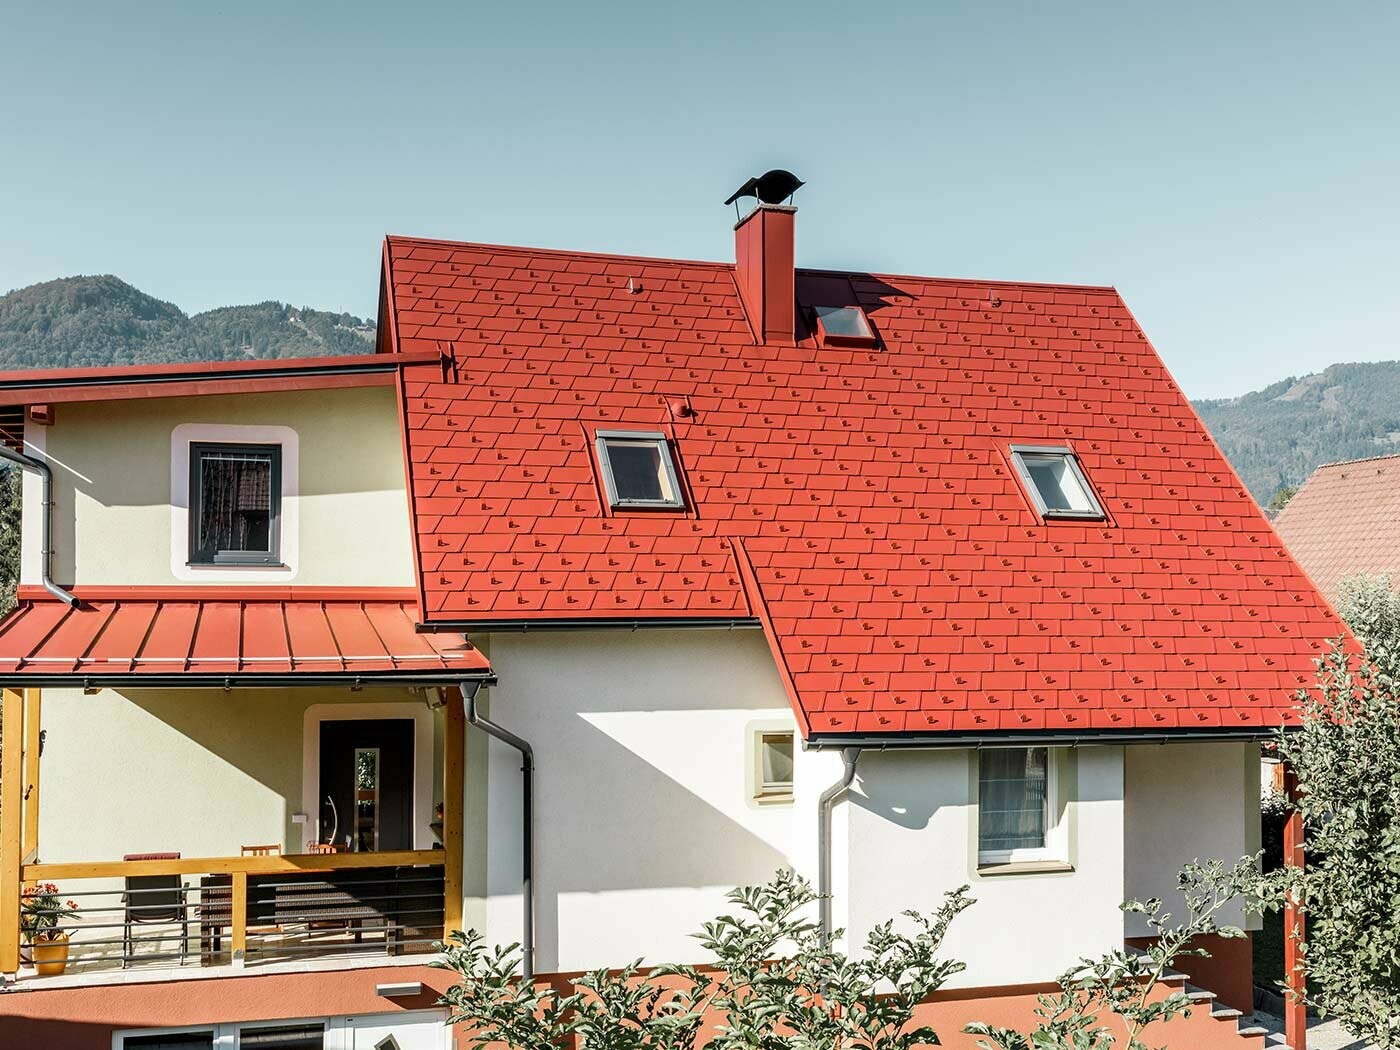 Maison individuelle classique recouverte du nouveau bardeau de toiture PREFA DS.19 en P.10 oxyde rouge.